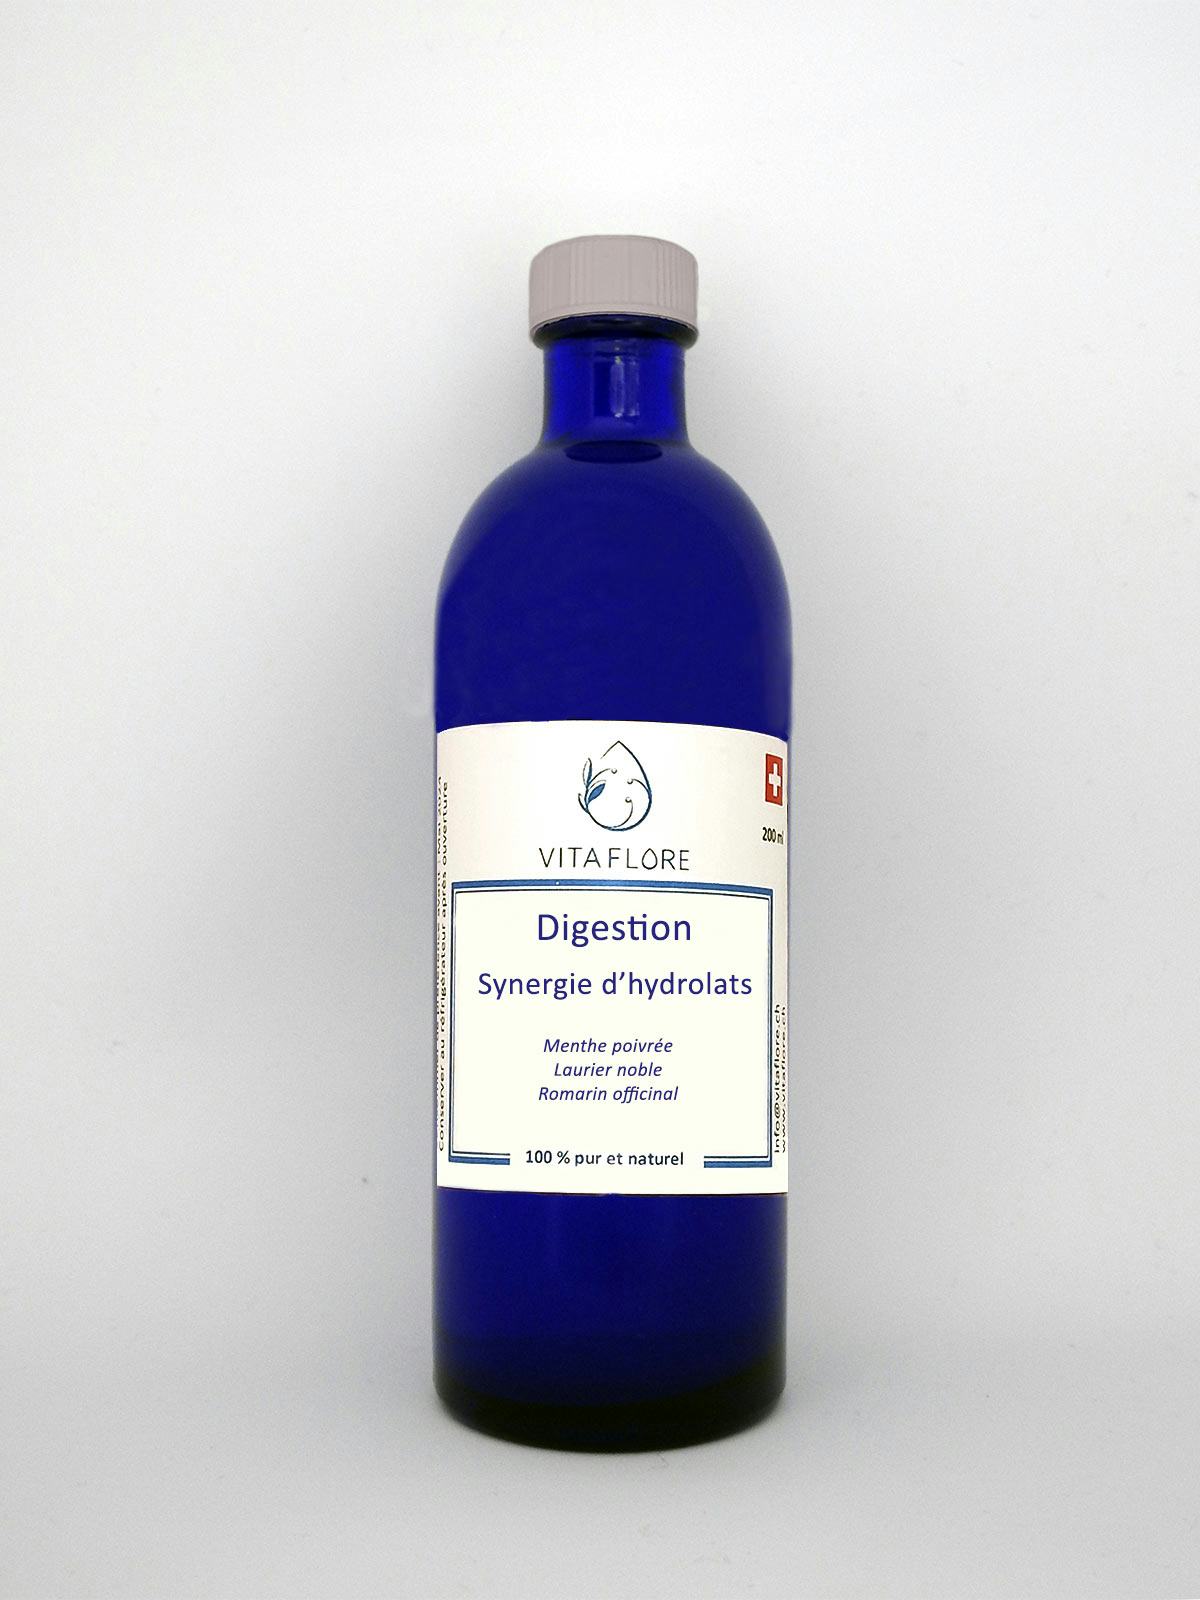 Synergie d’hydrolats – Digestion, handwerkliches Produkt für den Direktverkauf in der Schweiz